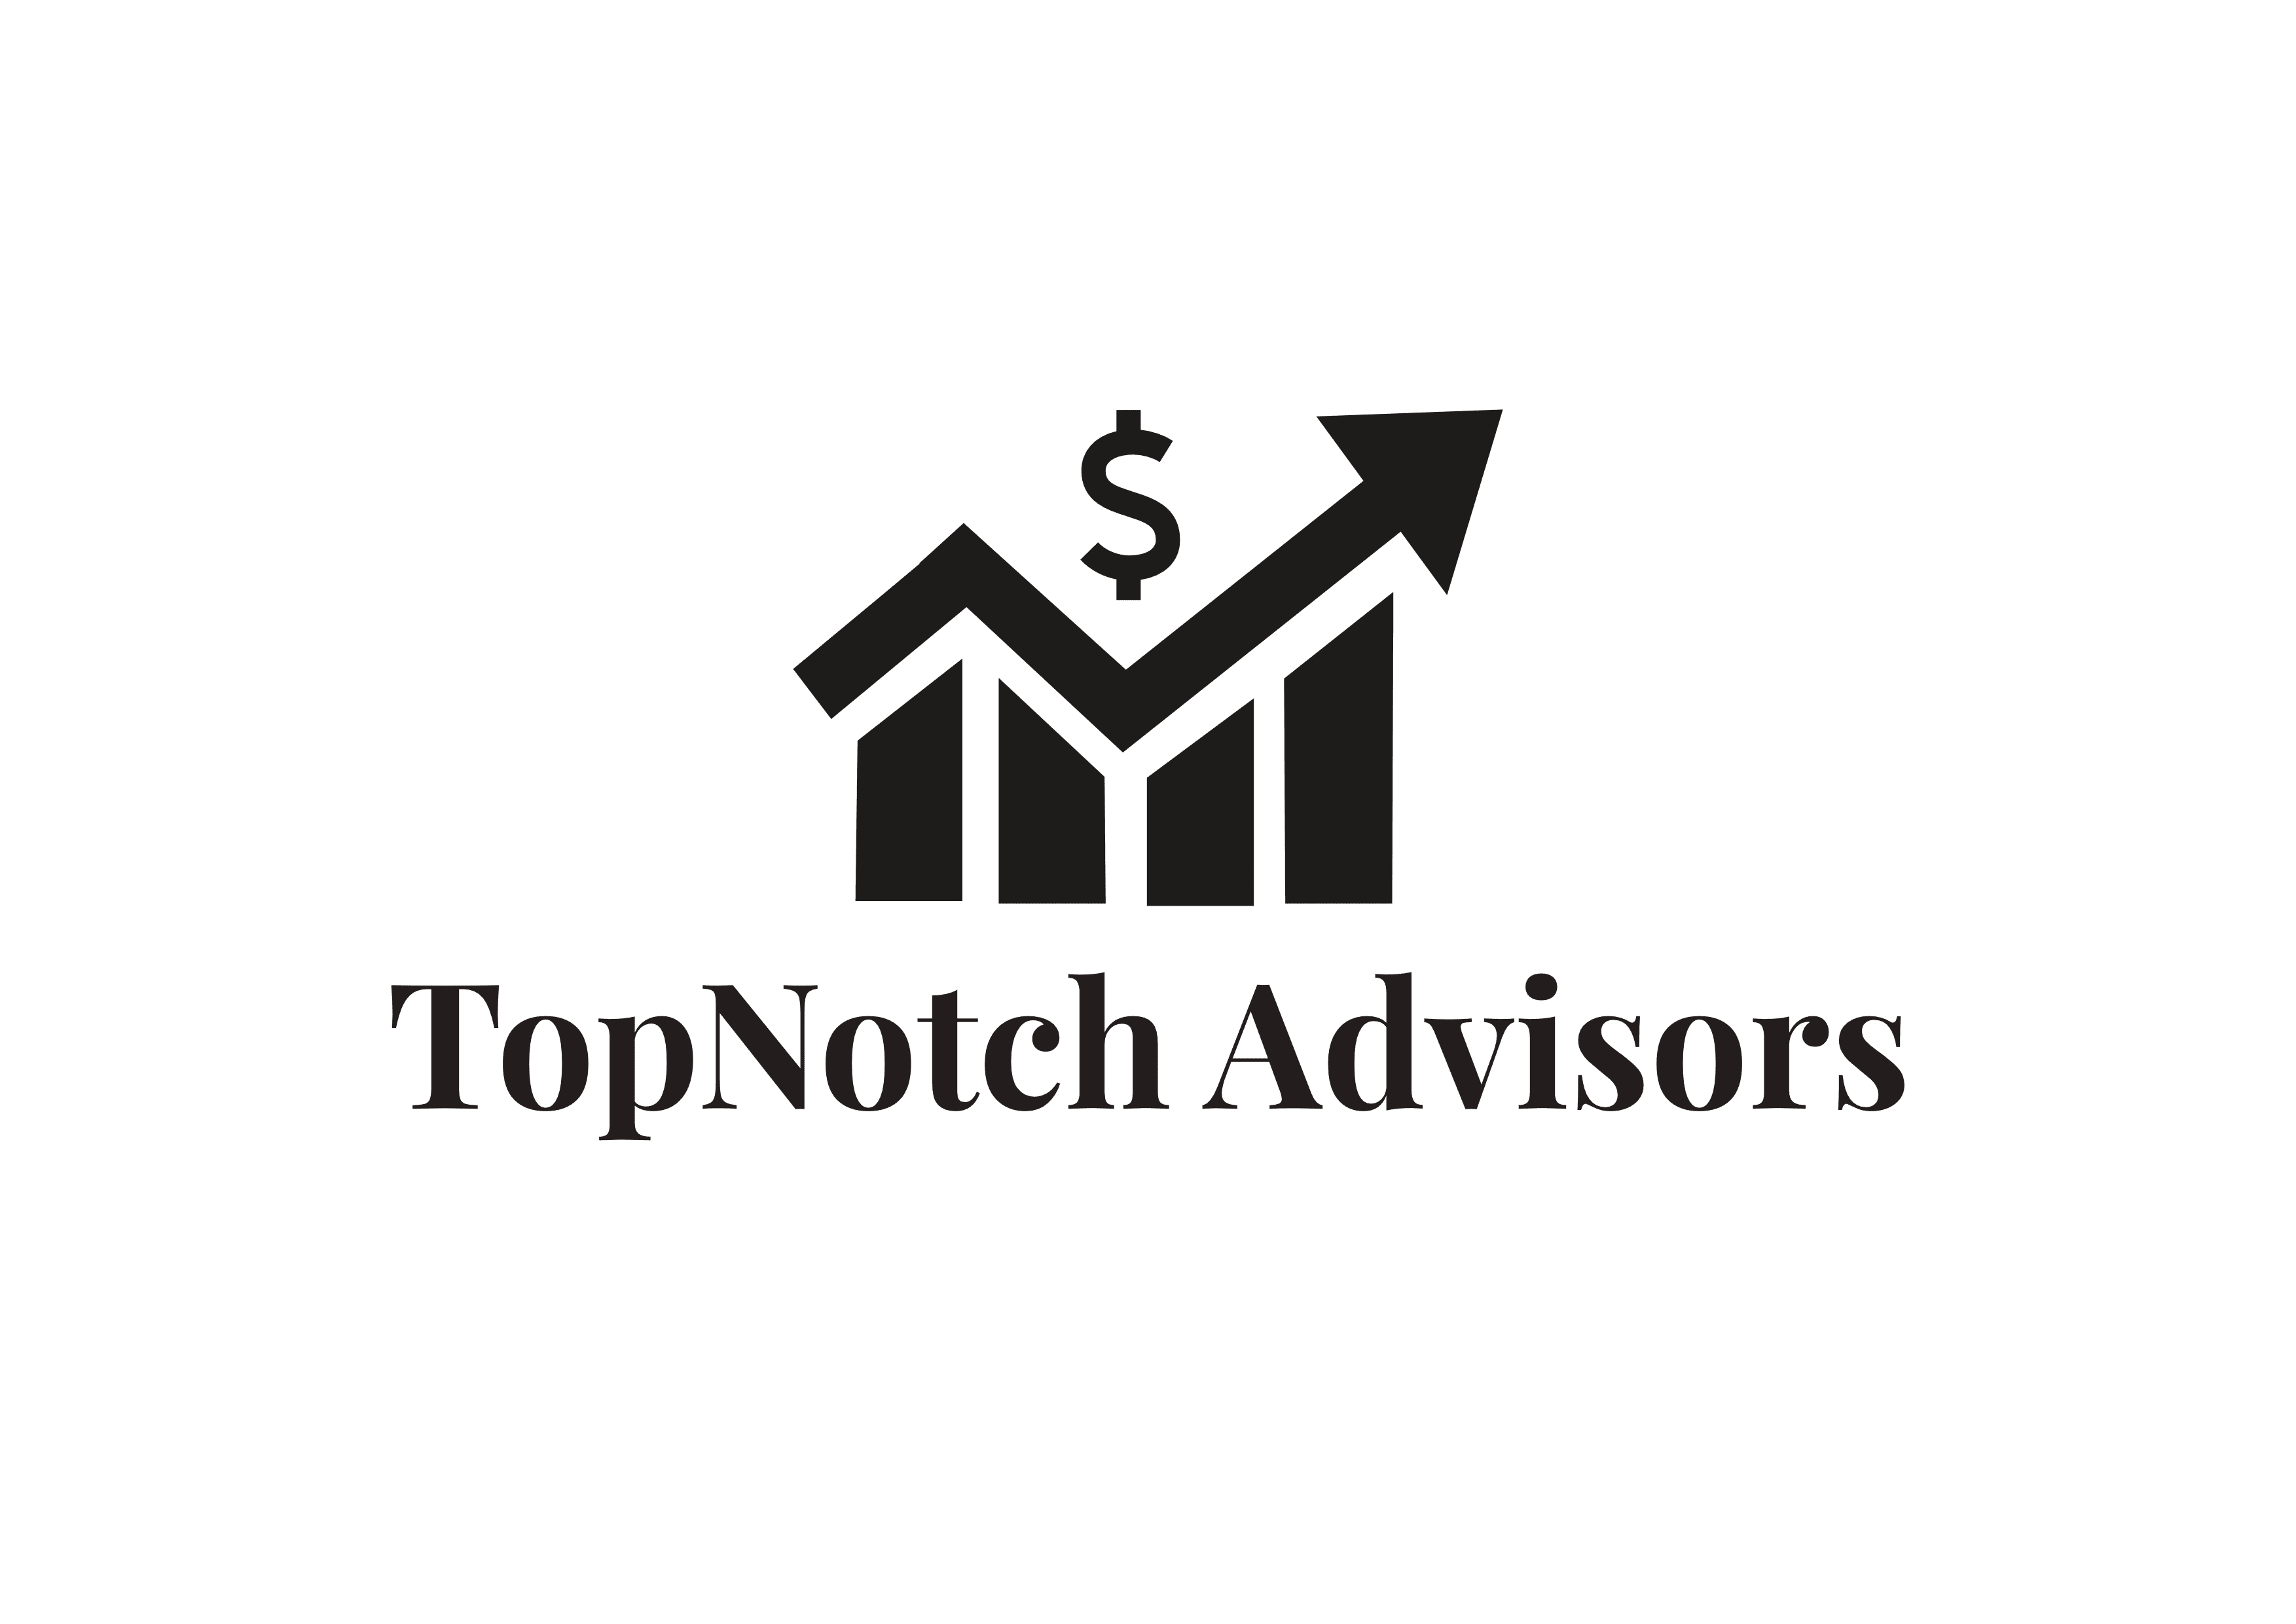 Top Notch Advisors